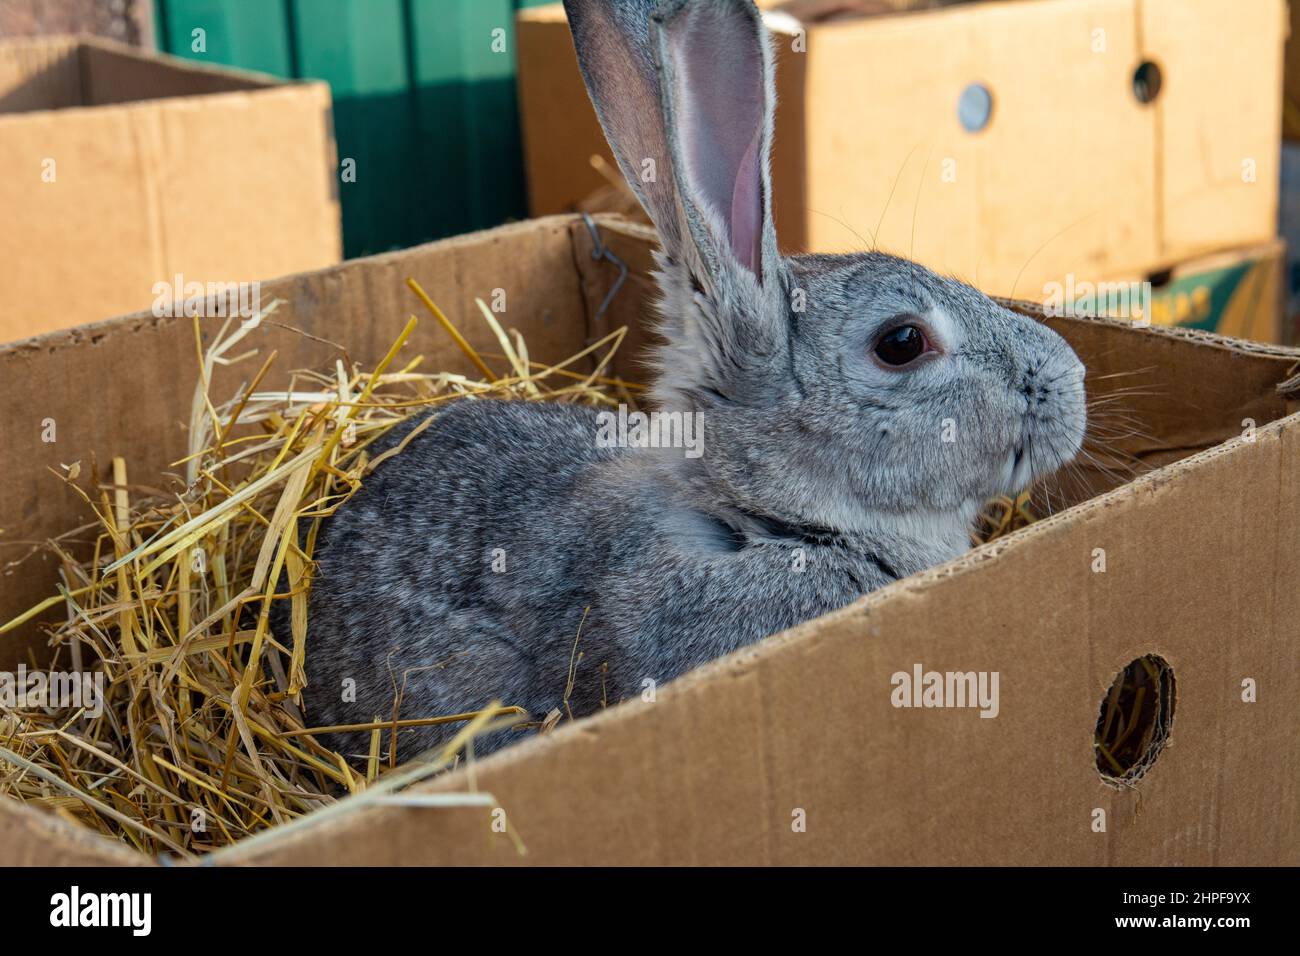 Kaninchen zum Verkauf auf dem Markt. Ein schöner grauer Haushase mit langen Ohren sitzt in einem Karton. Stockfoto